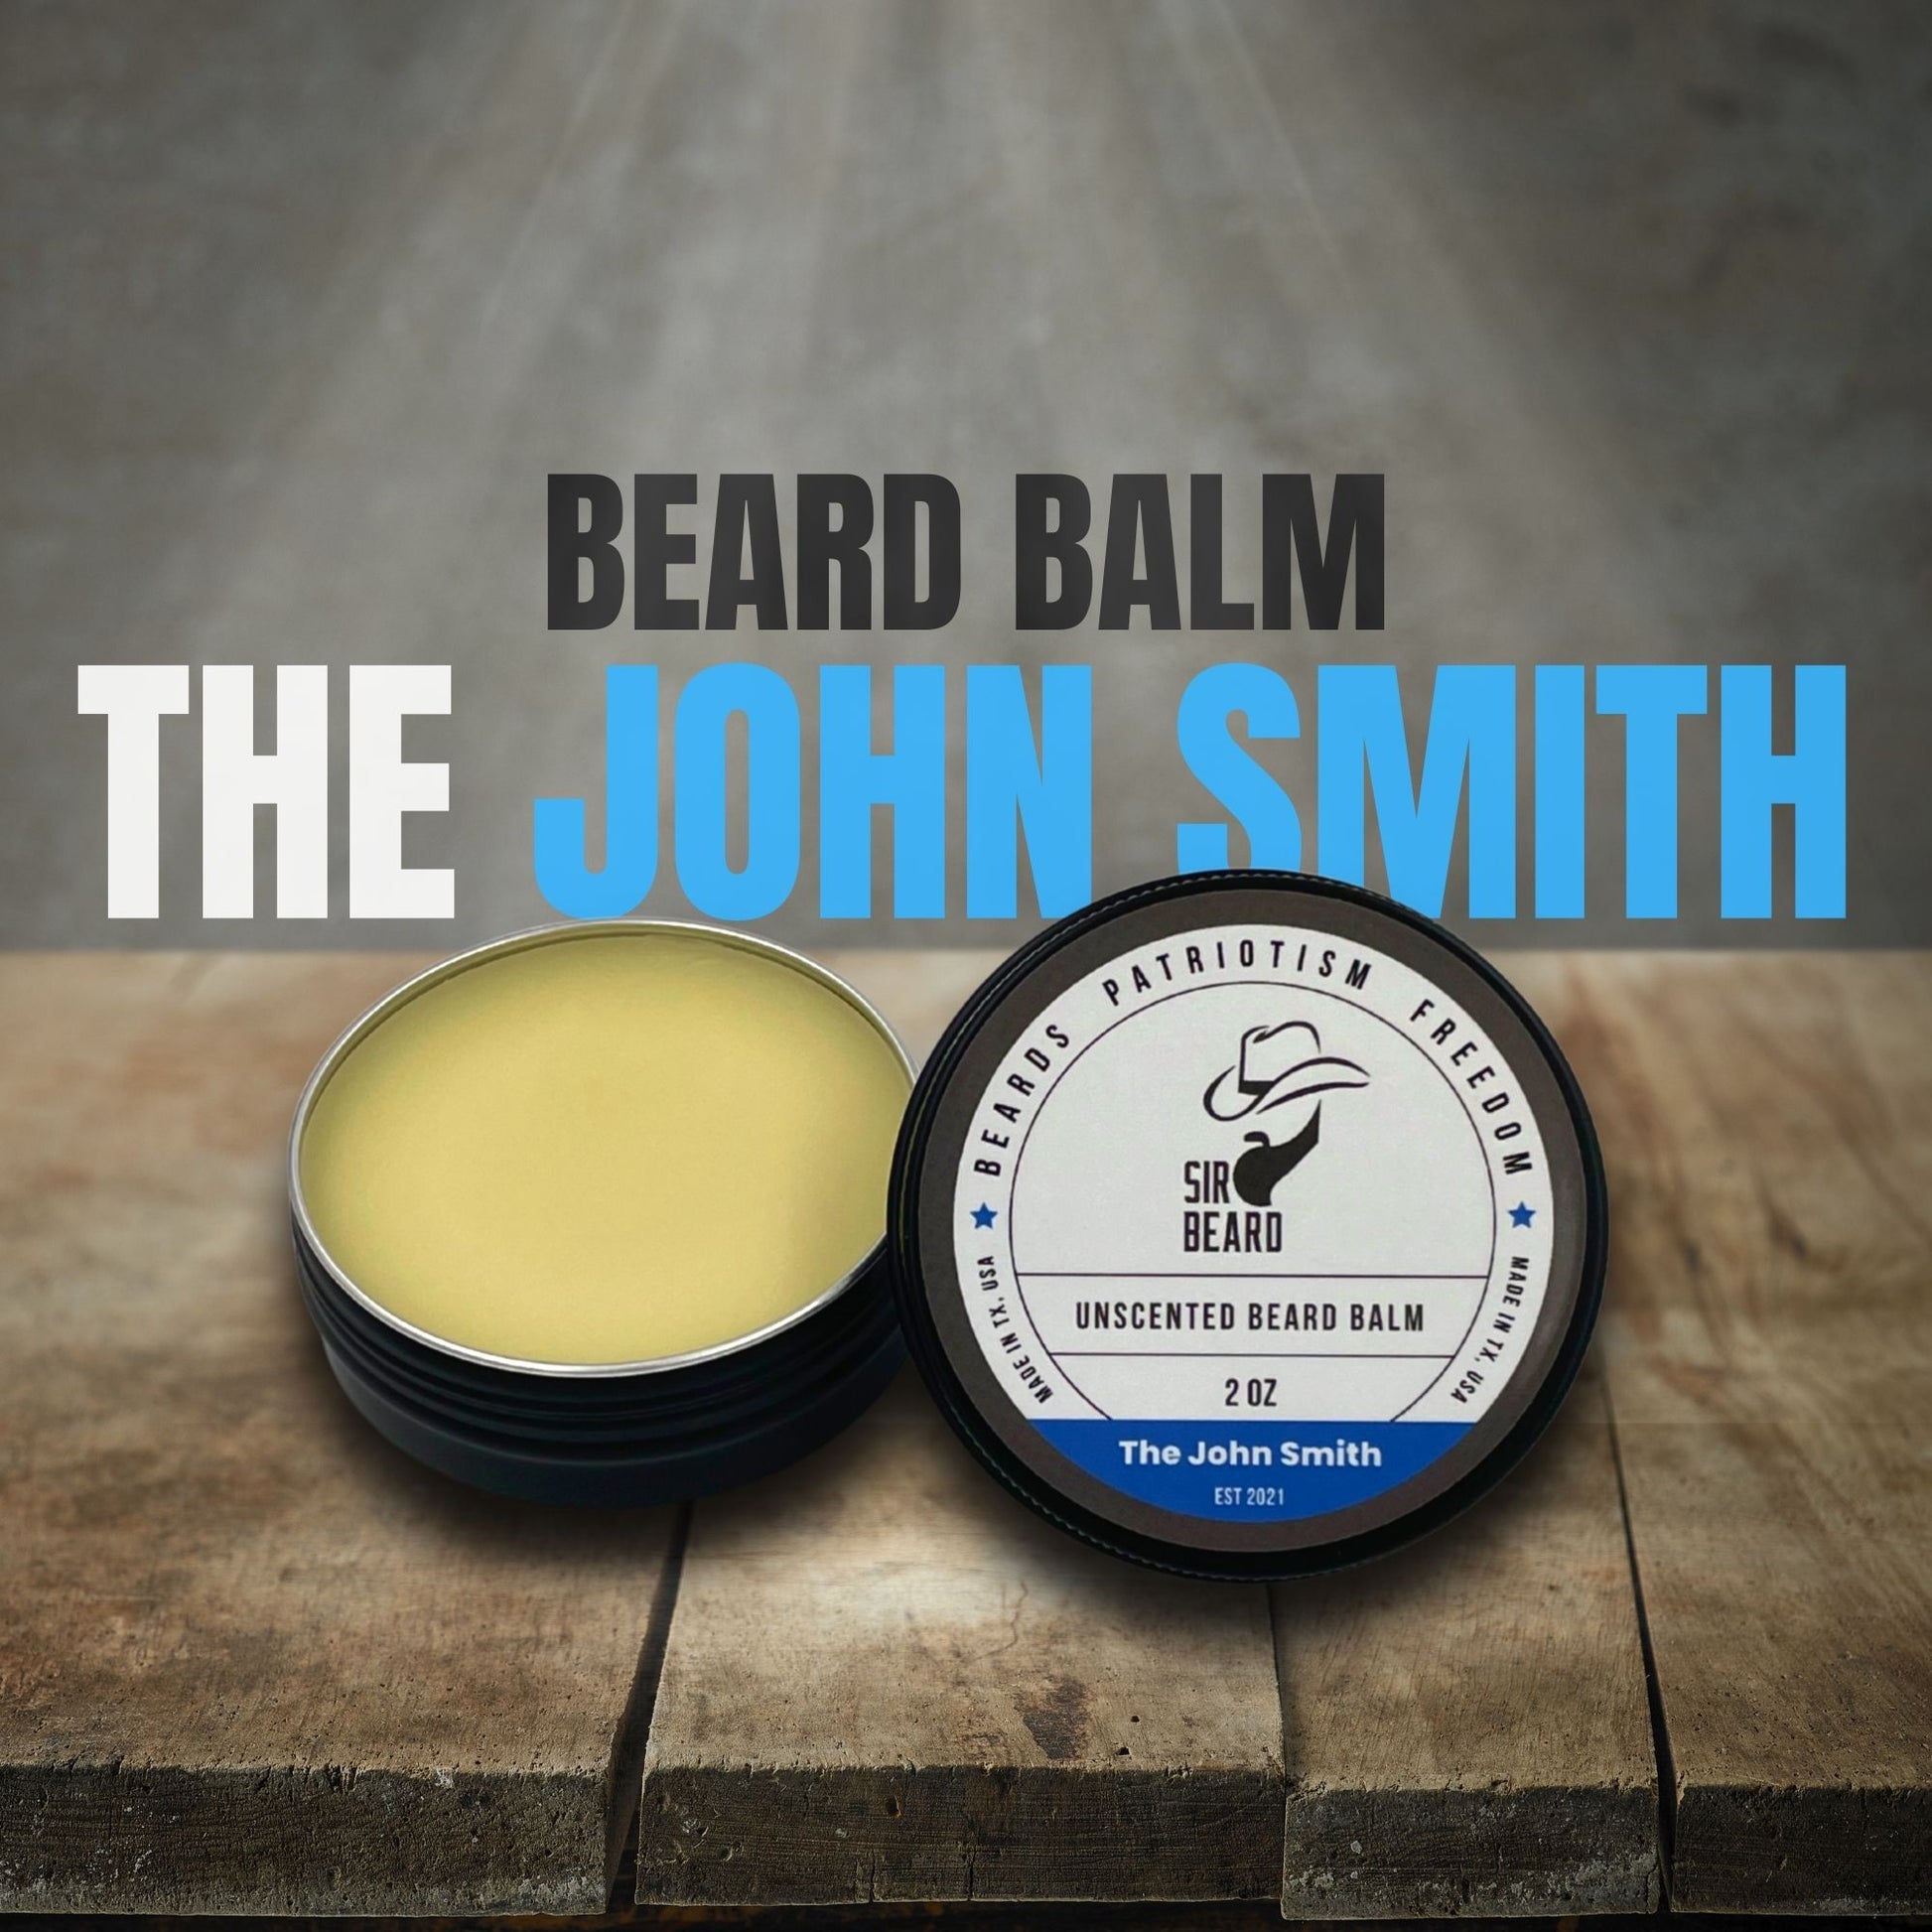 Sir Beard Texas Beard Balm open (The John Smith)